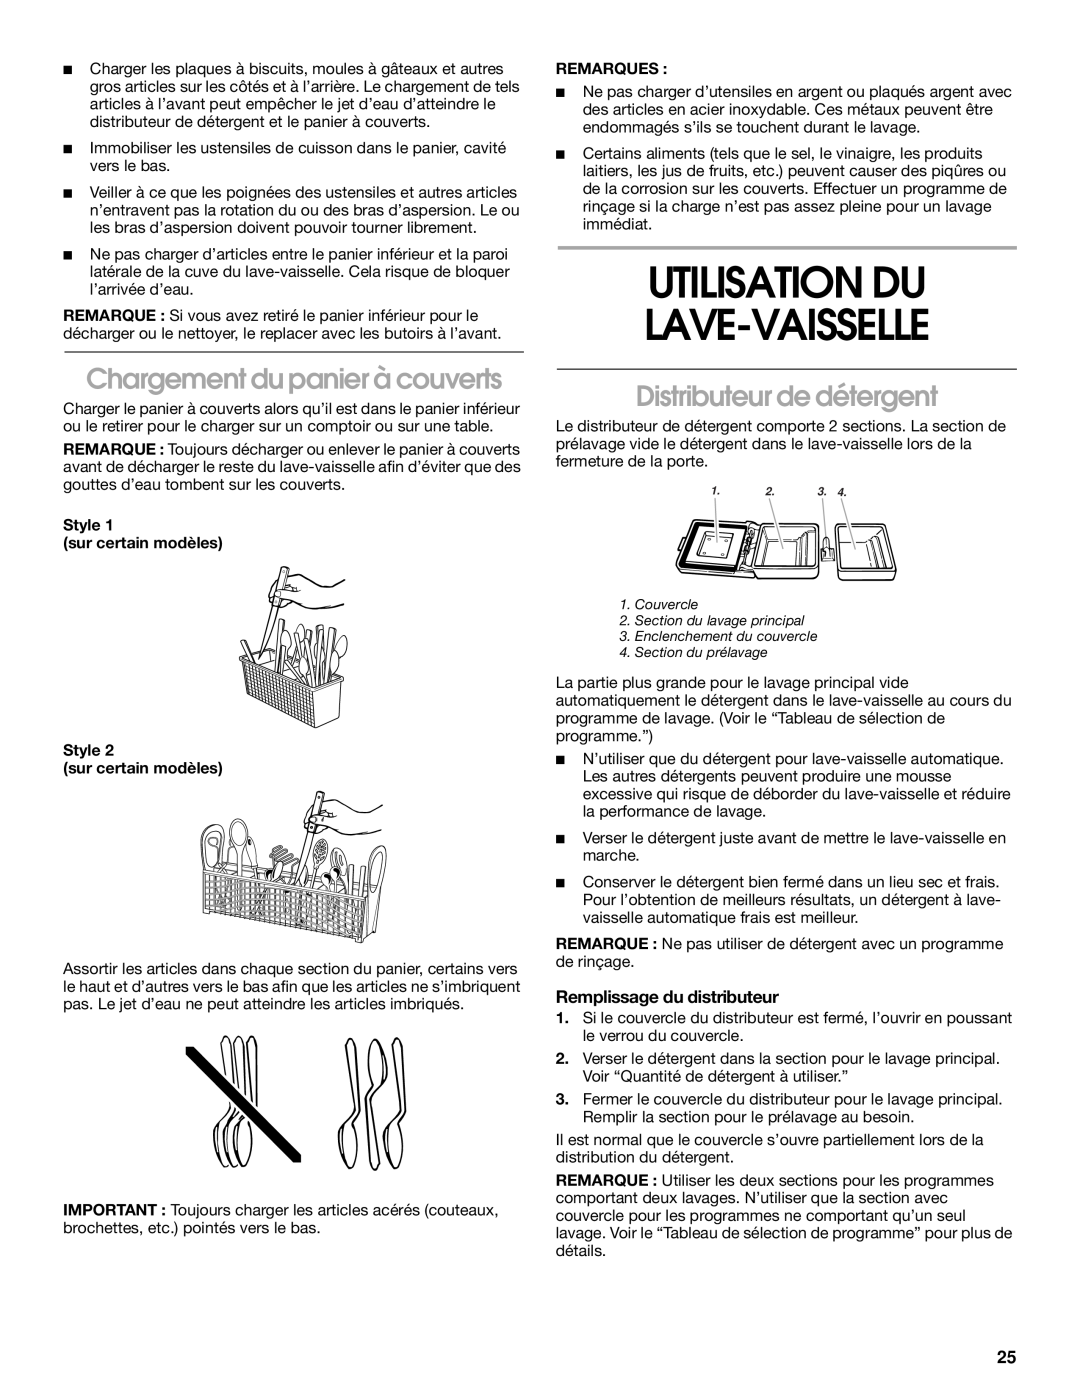 Whirlpool RUD3000, RUD5000 manual Utilisation Du Lave-Vaisselle, Chargement du panier à couverts, Distributeur de détergent 